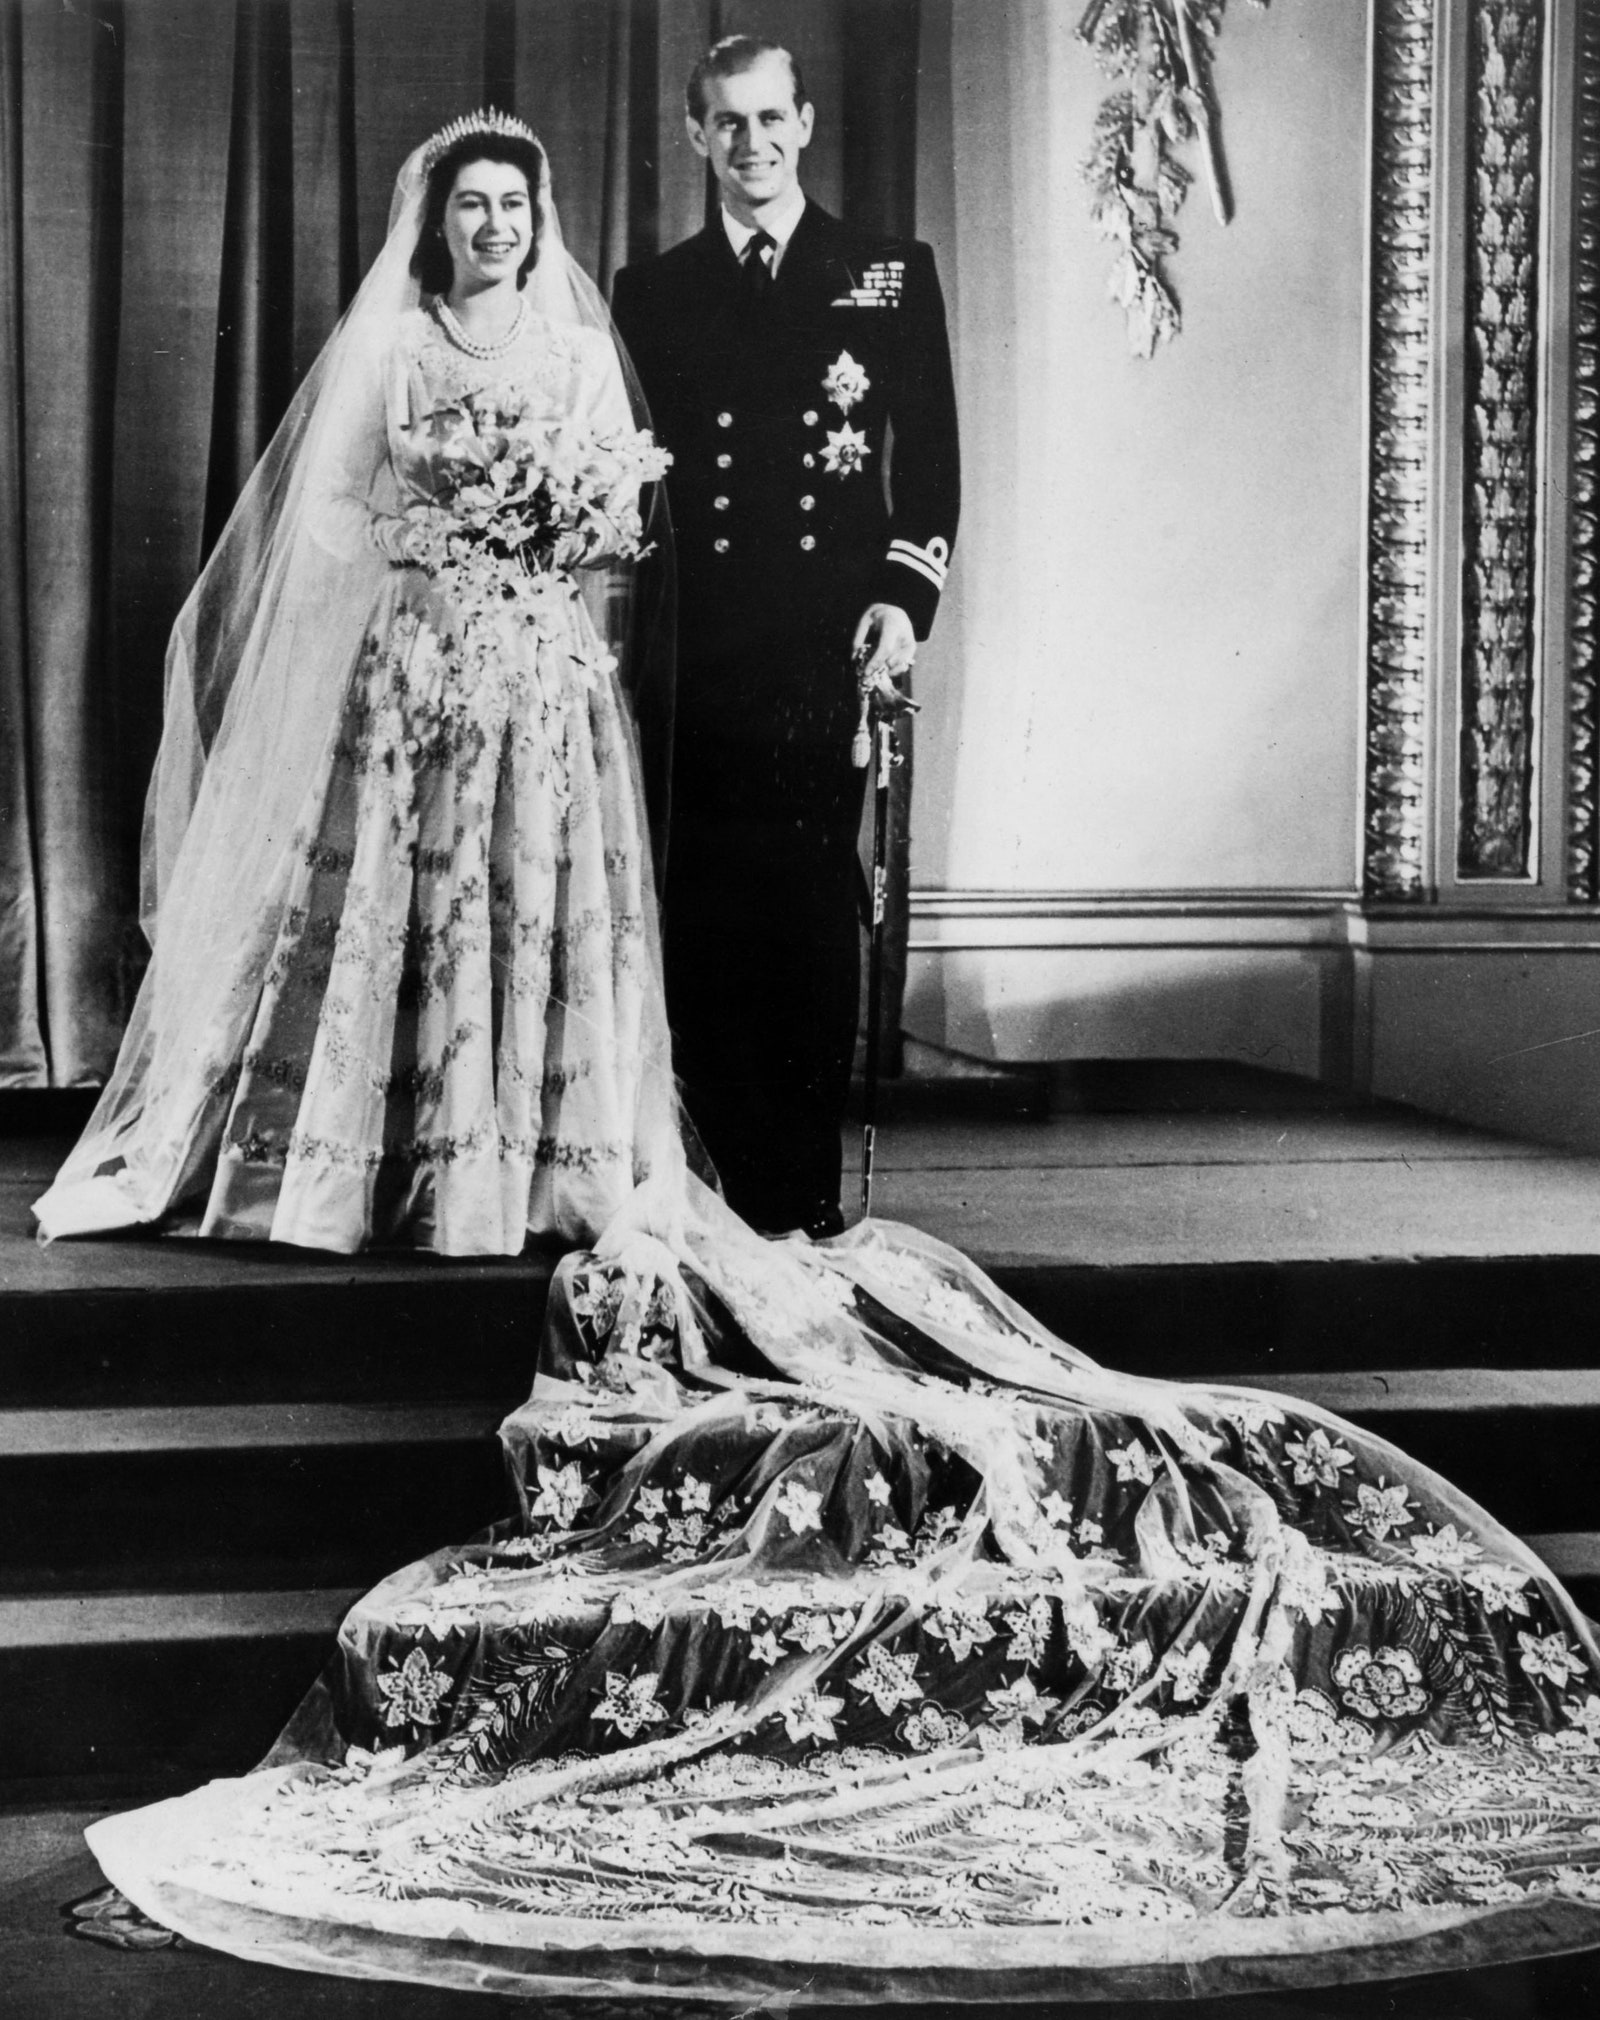 Как проходят свадьбы британских монархов принц Гарри и Меган Маркл Кейт Миддлтон и принц Уильям Диана Спенсер и принц Чарльз